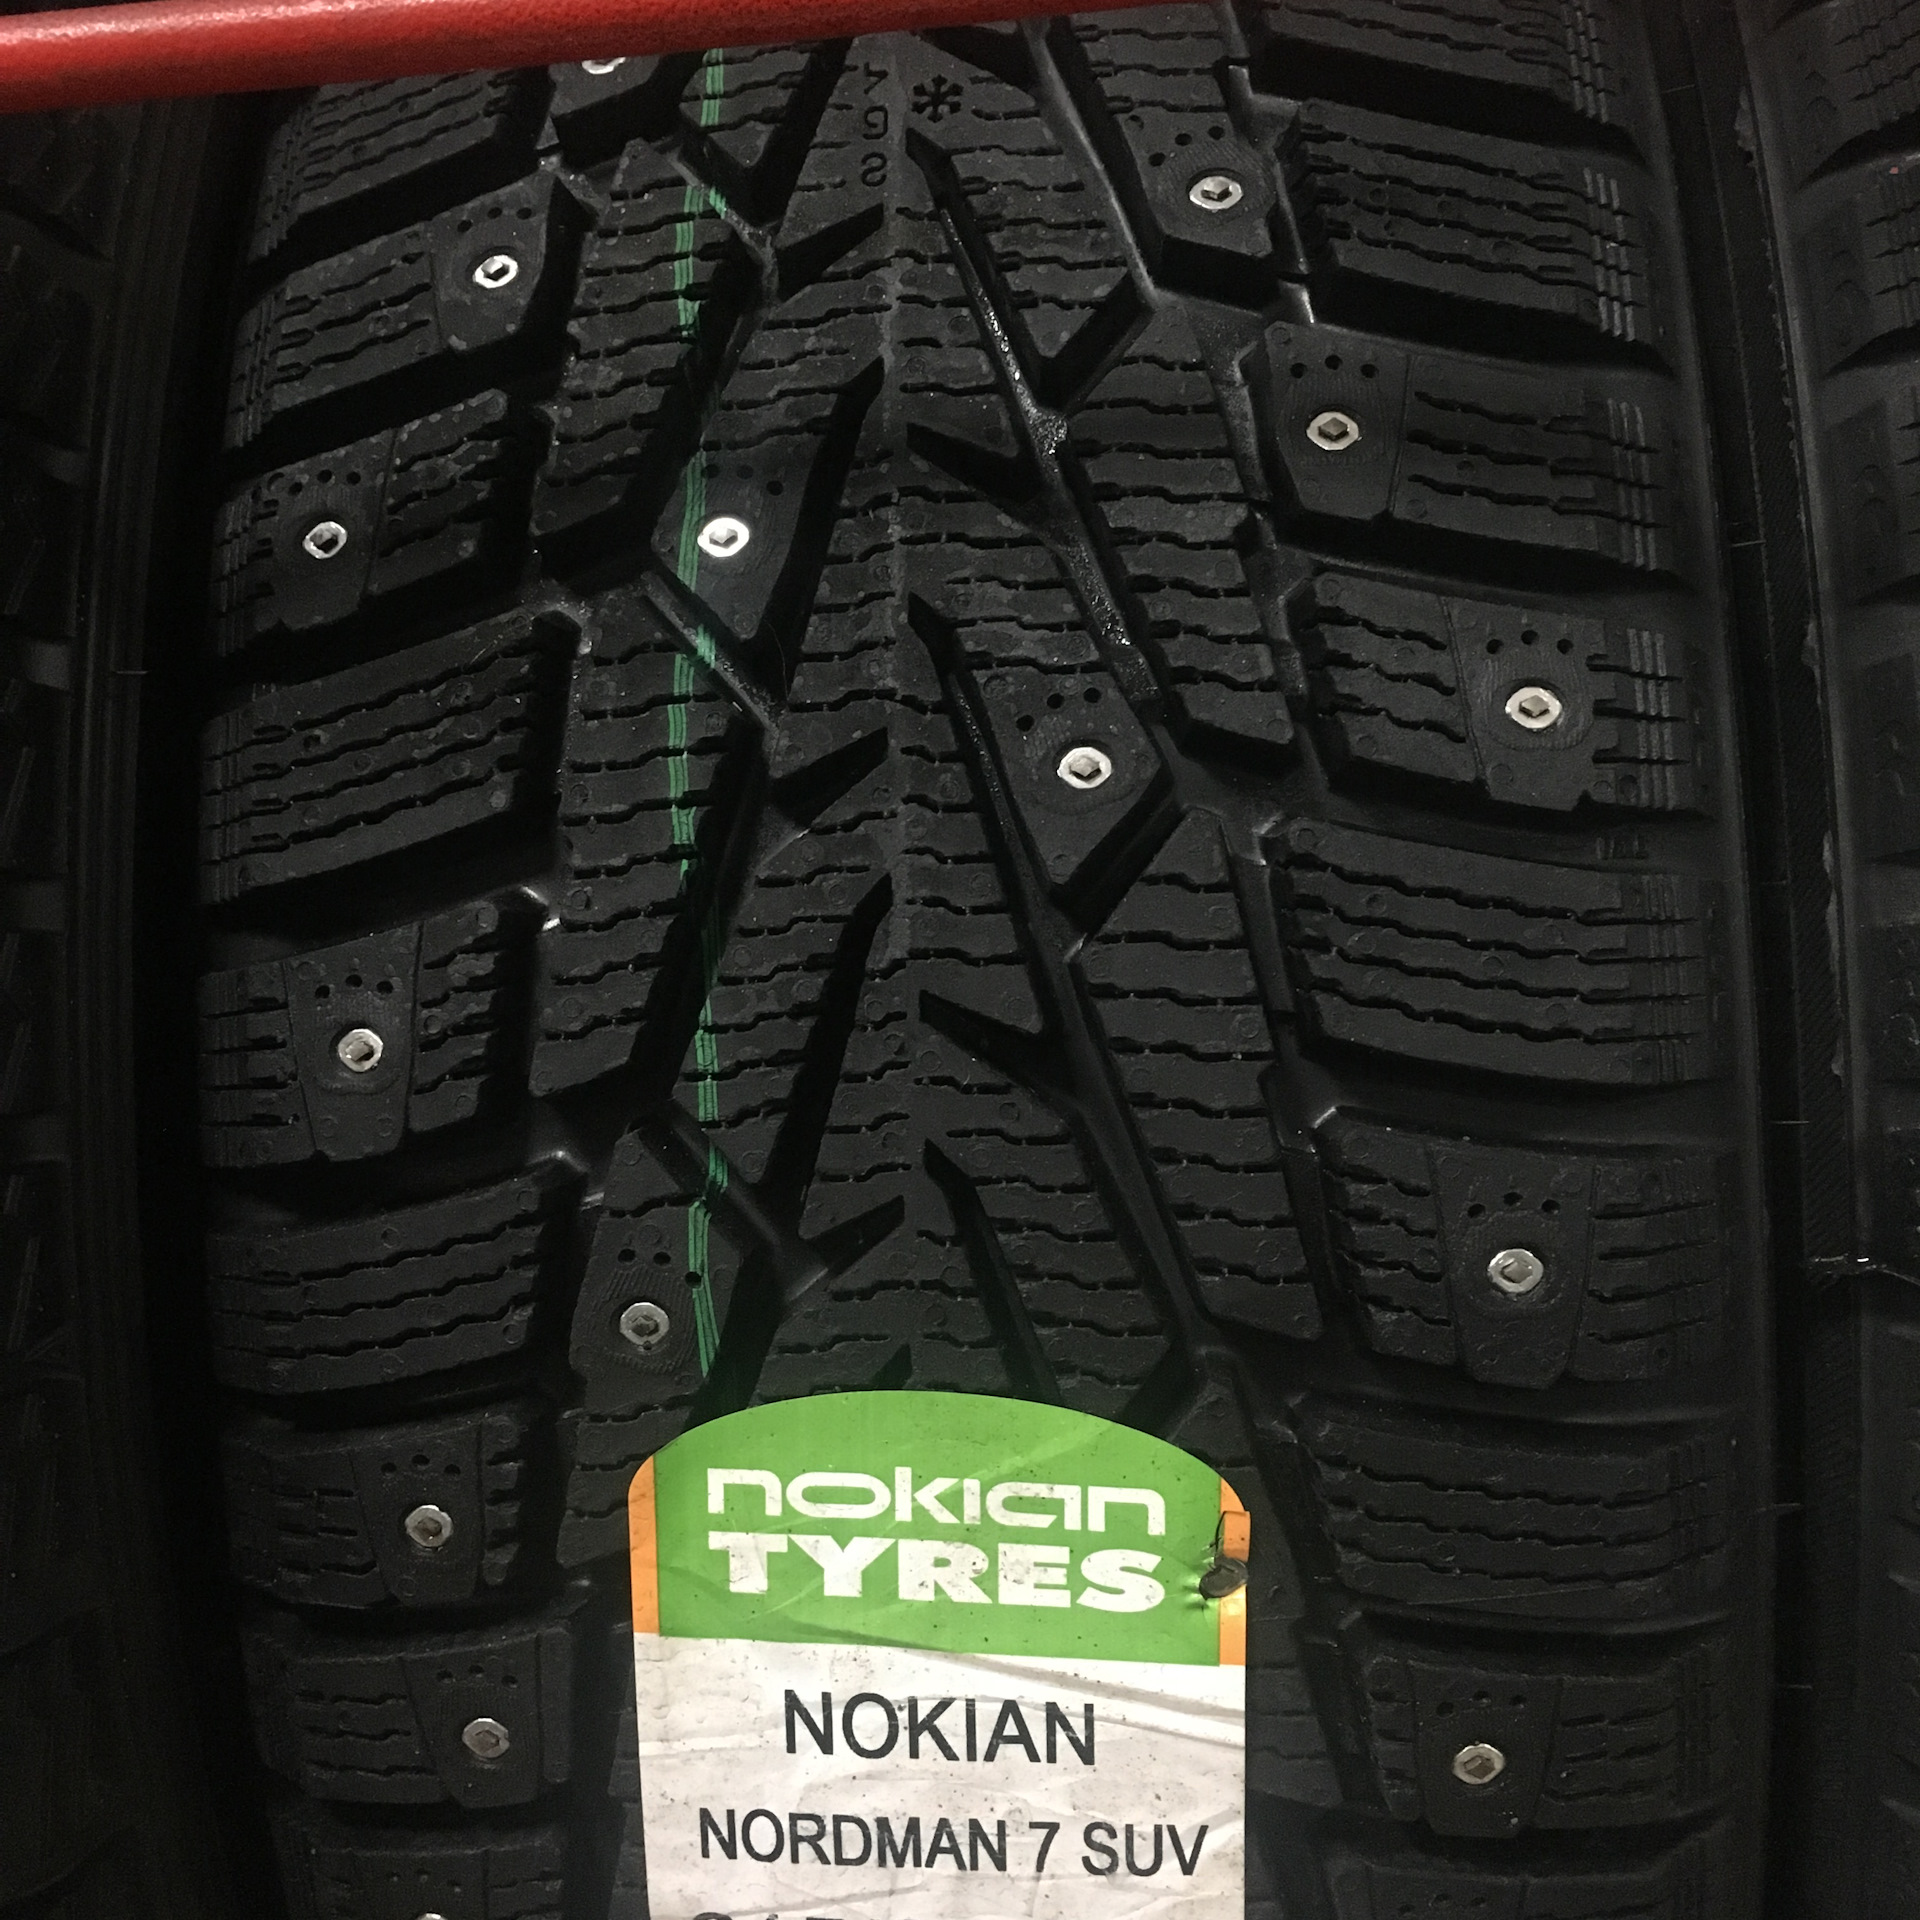 Нордман 7 отзывы зимние цена. Нордман 7 SUV. Nokian Nordman 7 SUV. Nokian Tyres Nordman 7 SUV. Нордман 7 SUV 215 65 16.